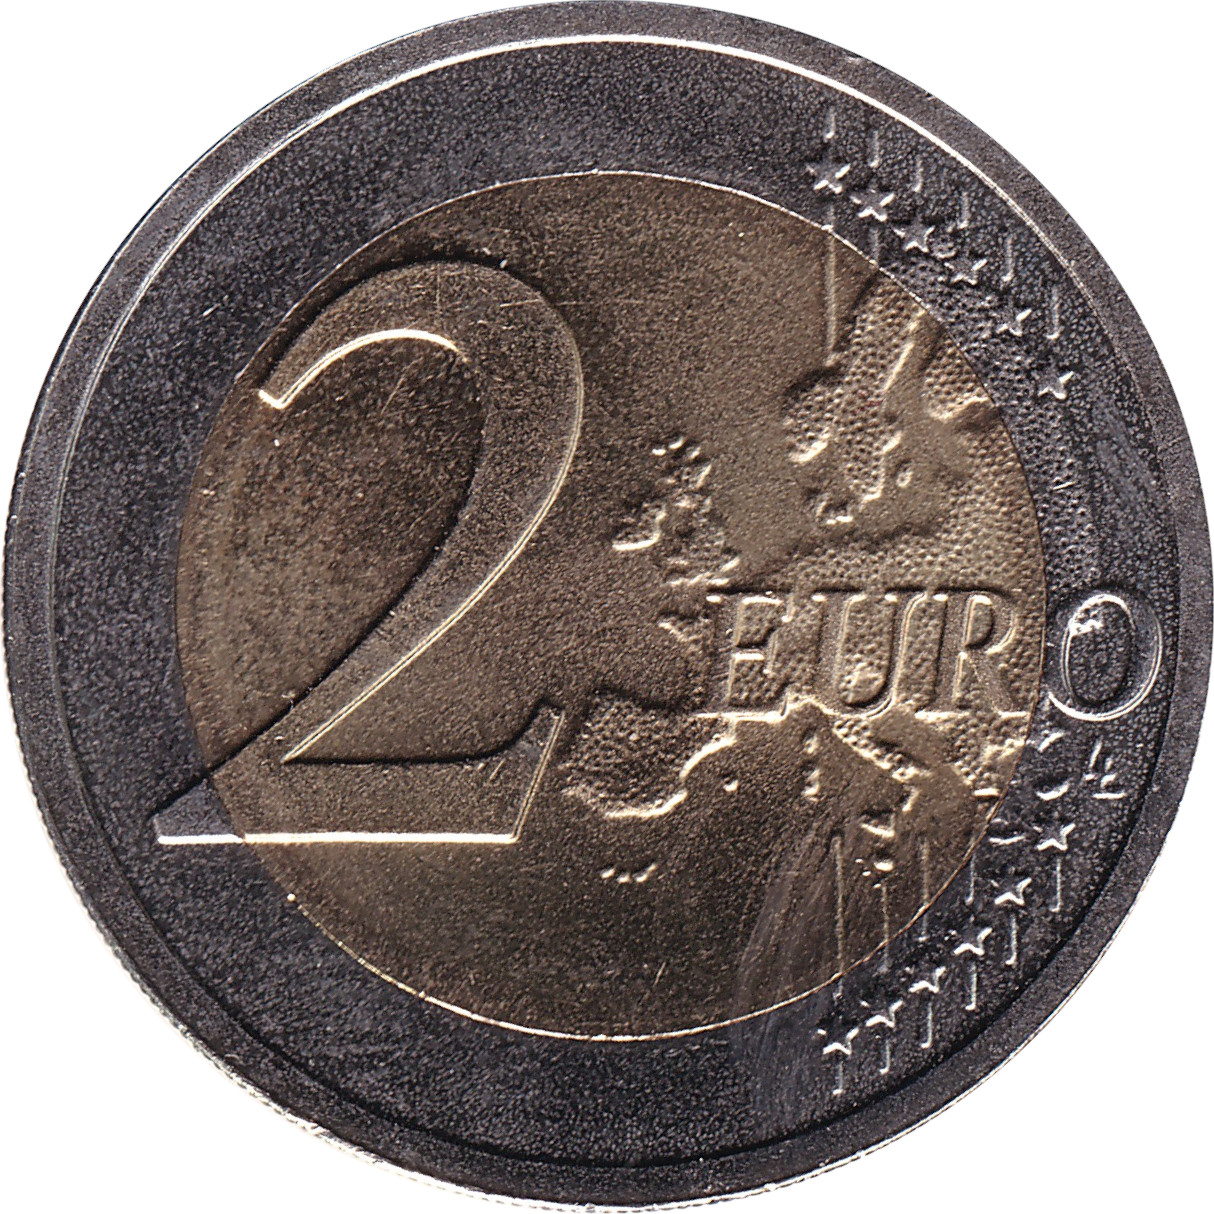 2 euro - Indépendance des Etats Baltes - 100 years